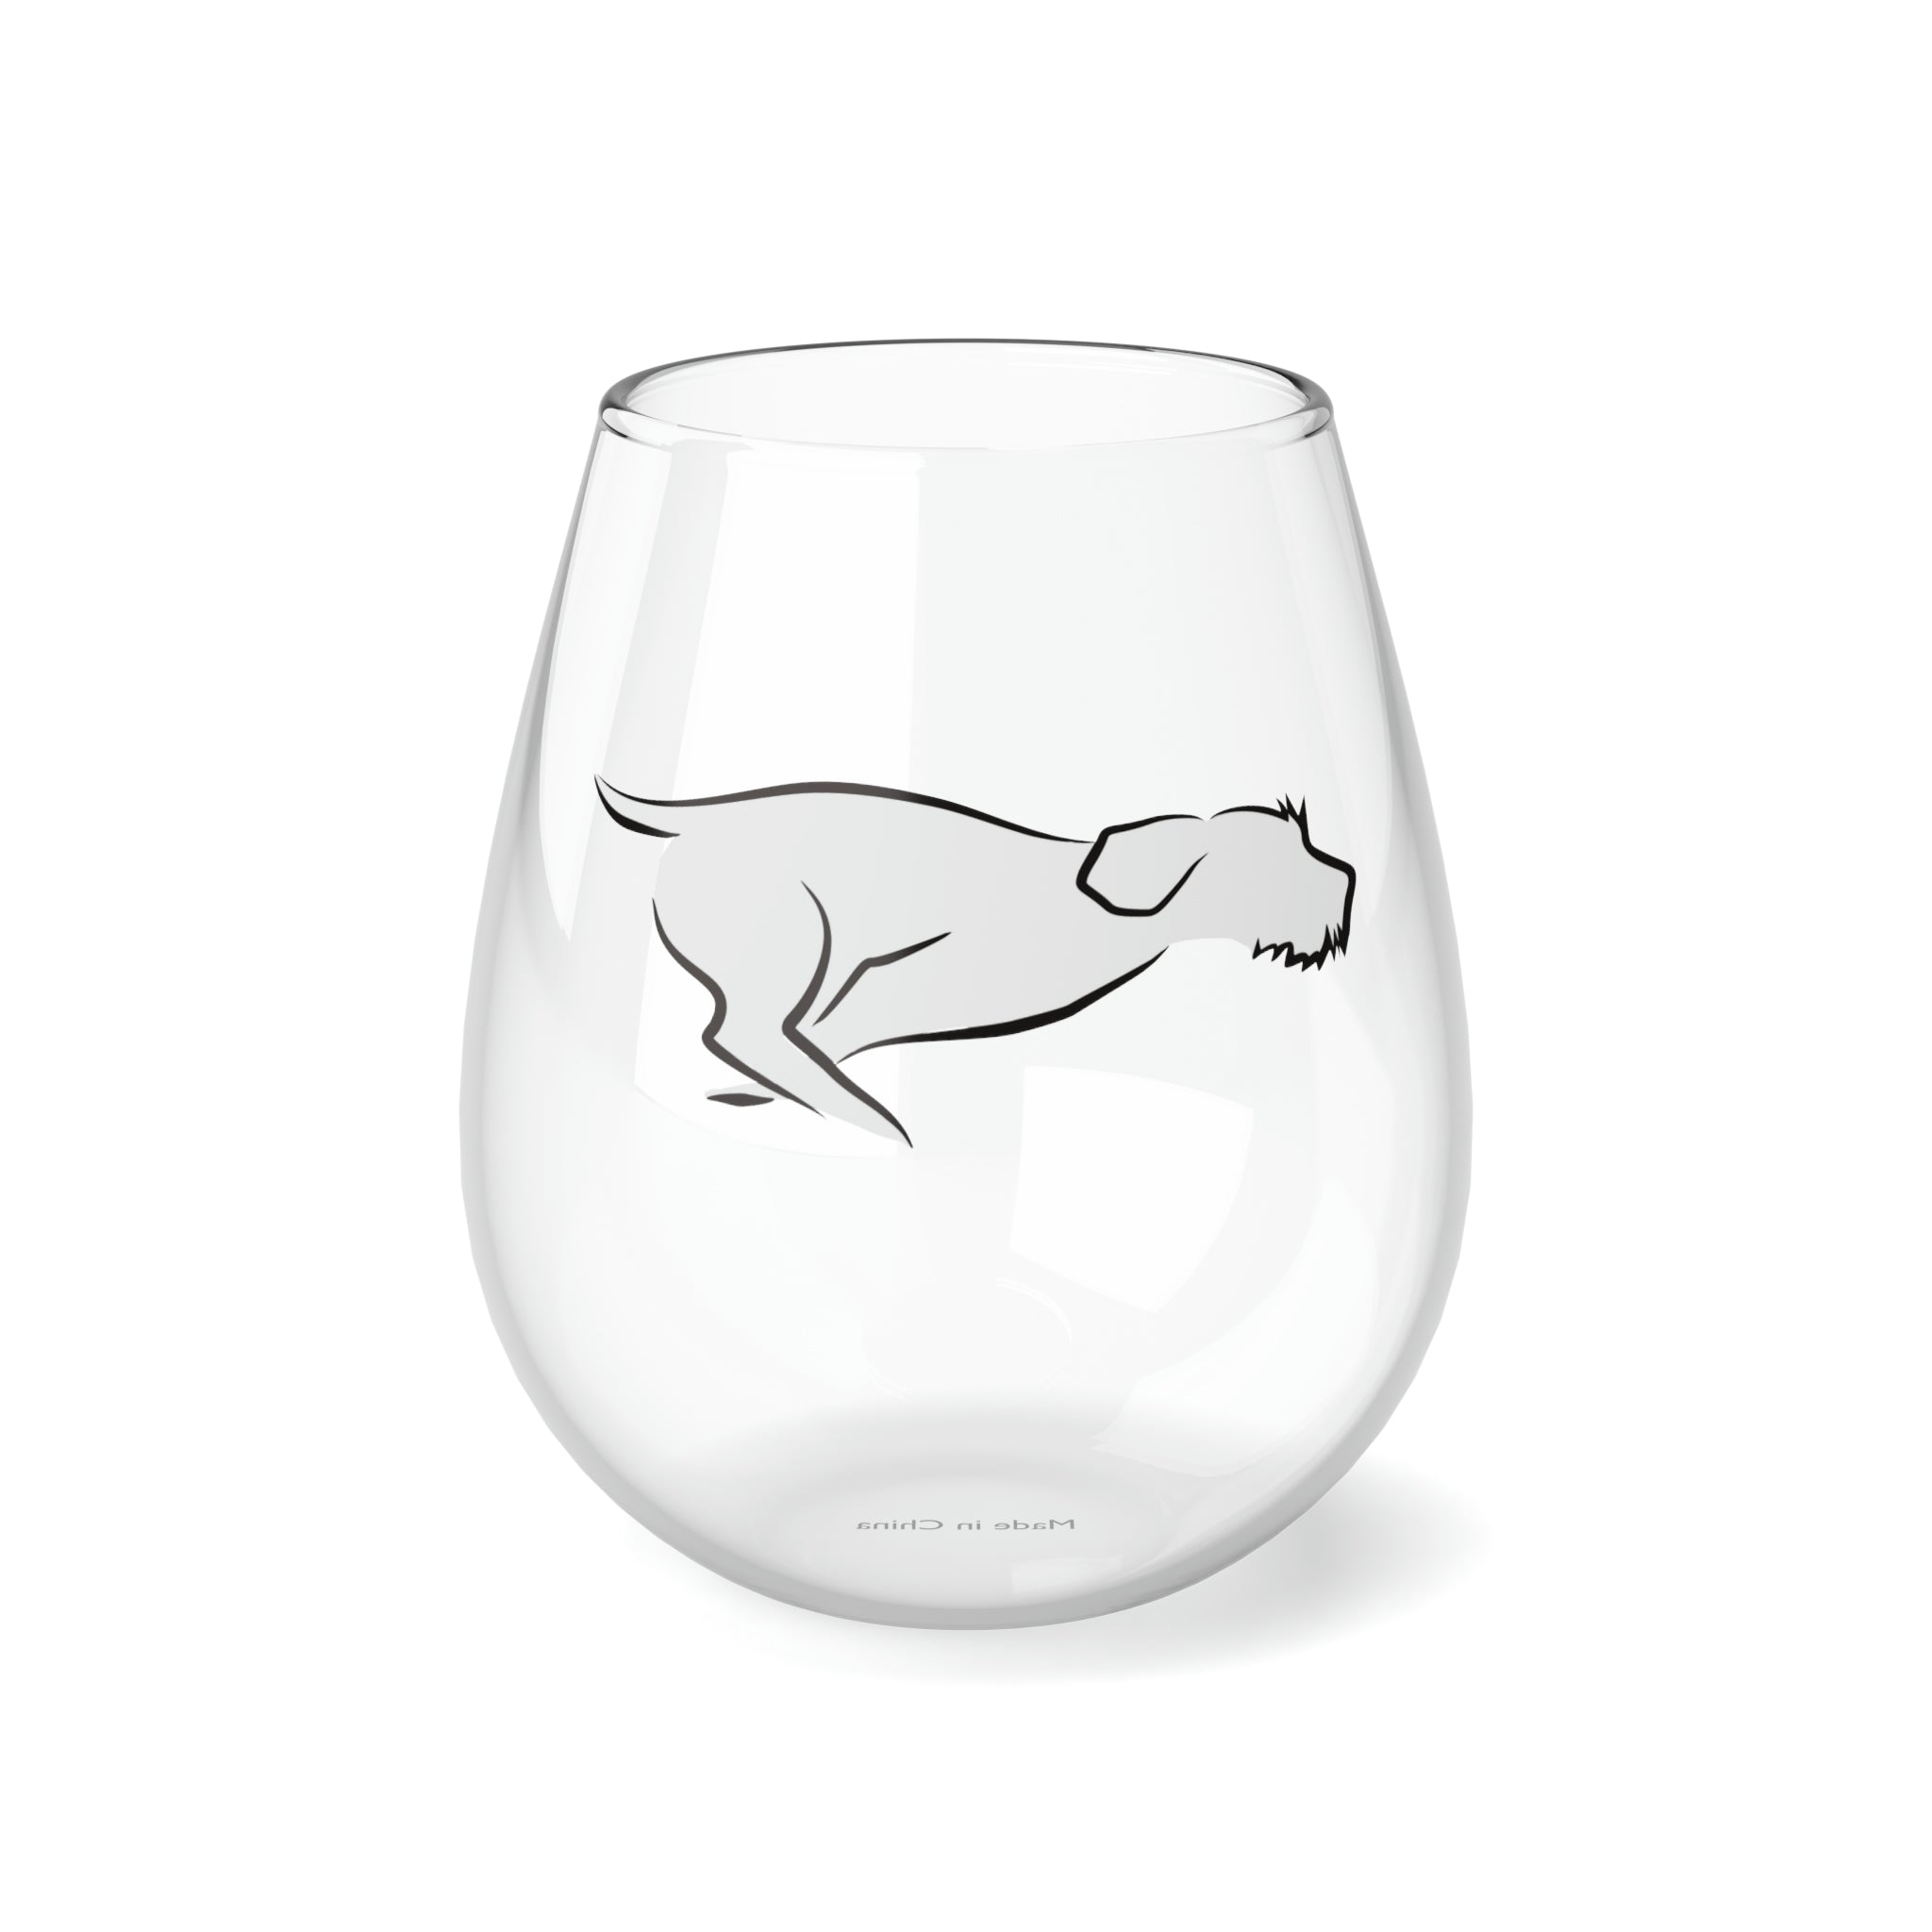 ZOOMIE Stemless Wine Glass, 11.75oz